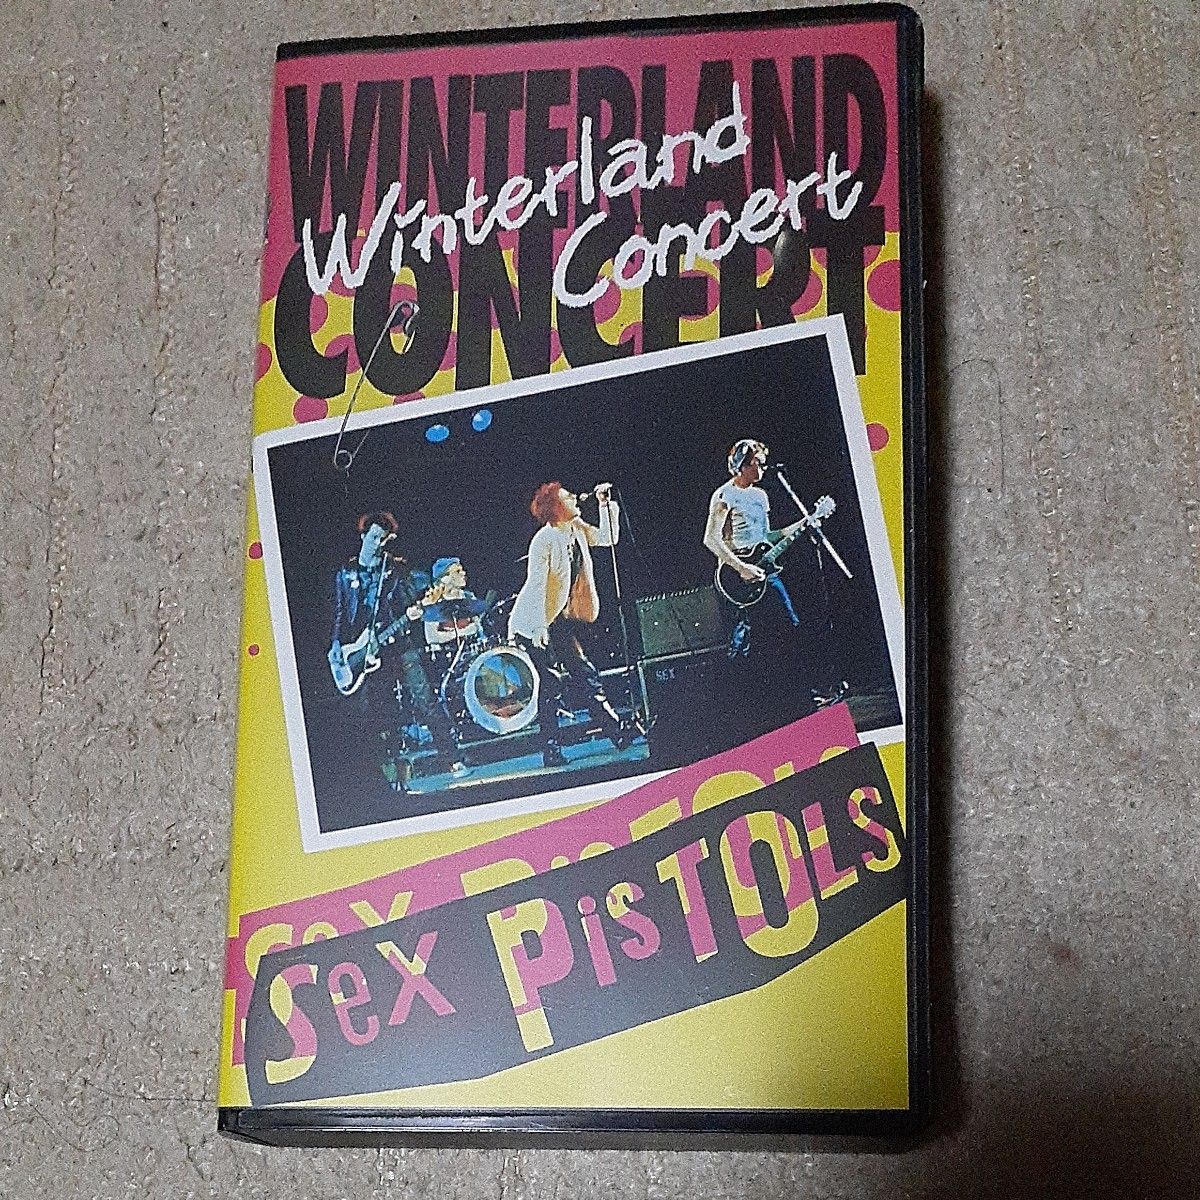 セックス・ピストルズ　伝説のラストライブ　VHS